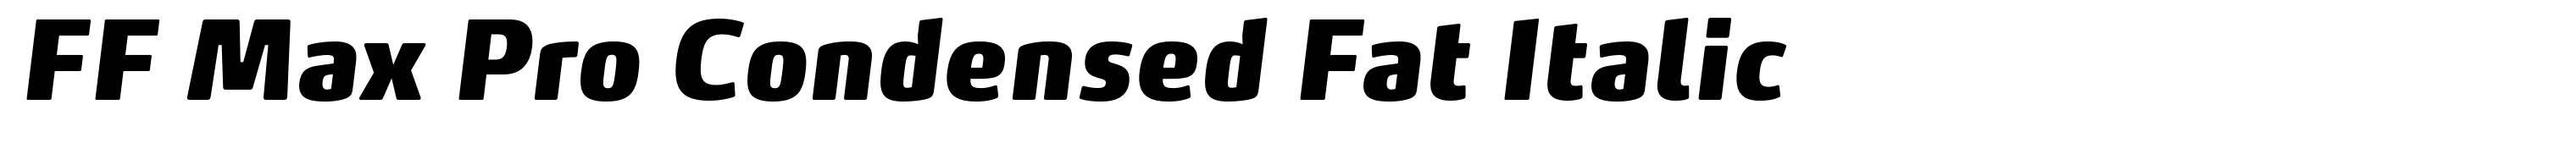 FF Max Pro Condensed Fat Italic